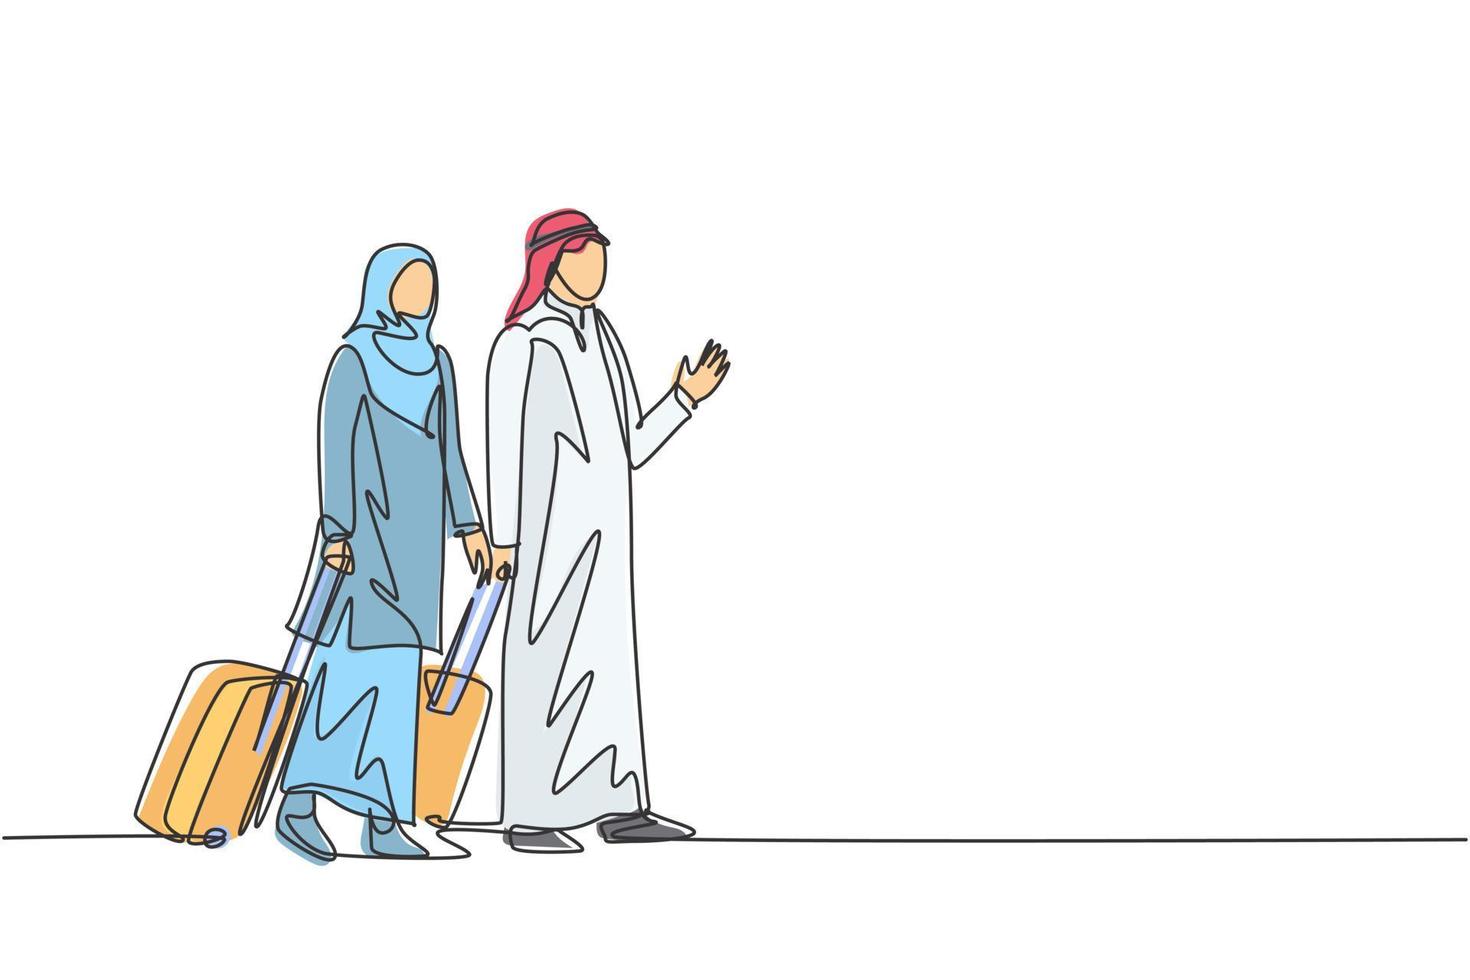 één enkele lijntekening van jonge gelukkige mannelijke en vrouwelijke moslimmedewerkers na een zakenreis. saoedi-arabische doek shmag, kandora, thobe, ghutra, hijab. doorlopende lijn tekenen ontwerp vectorillustratie vector